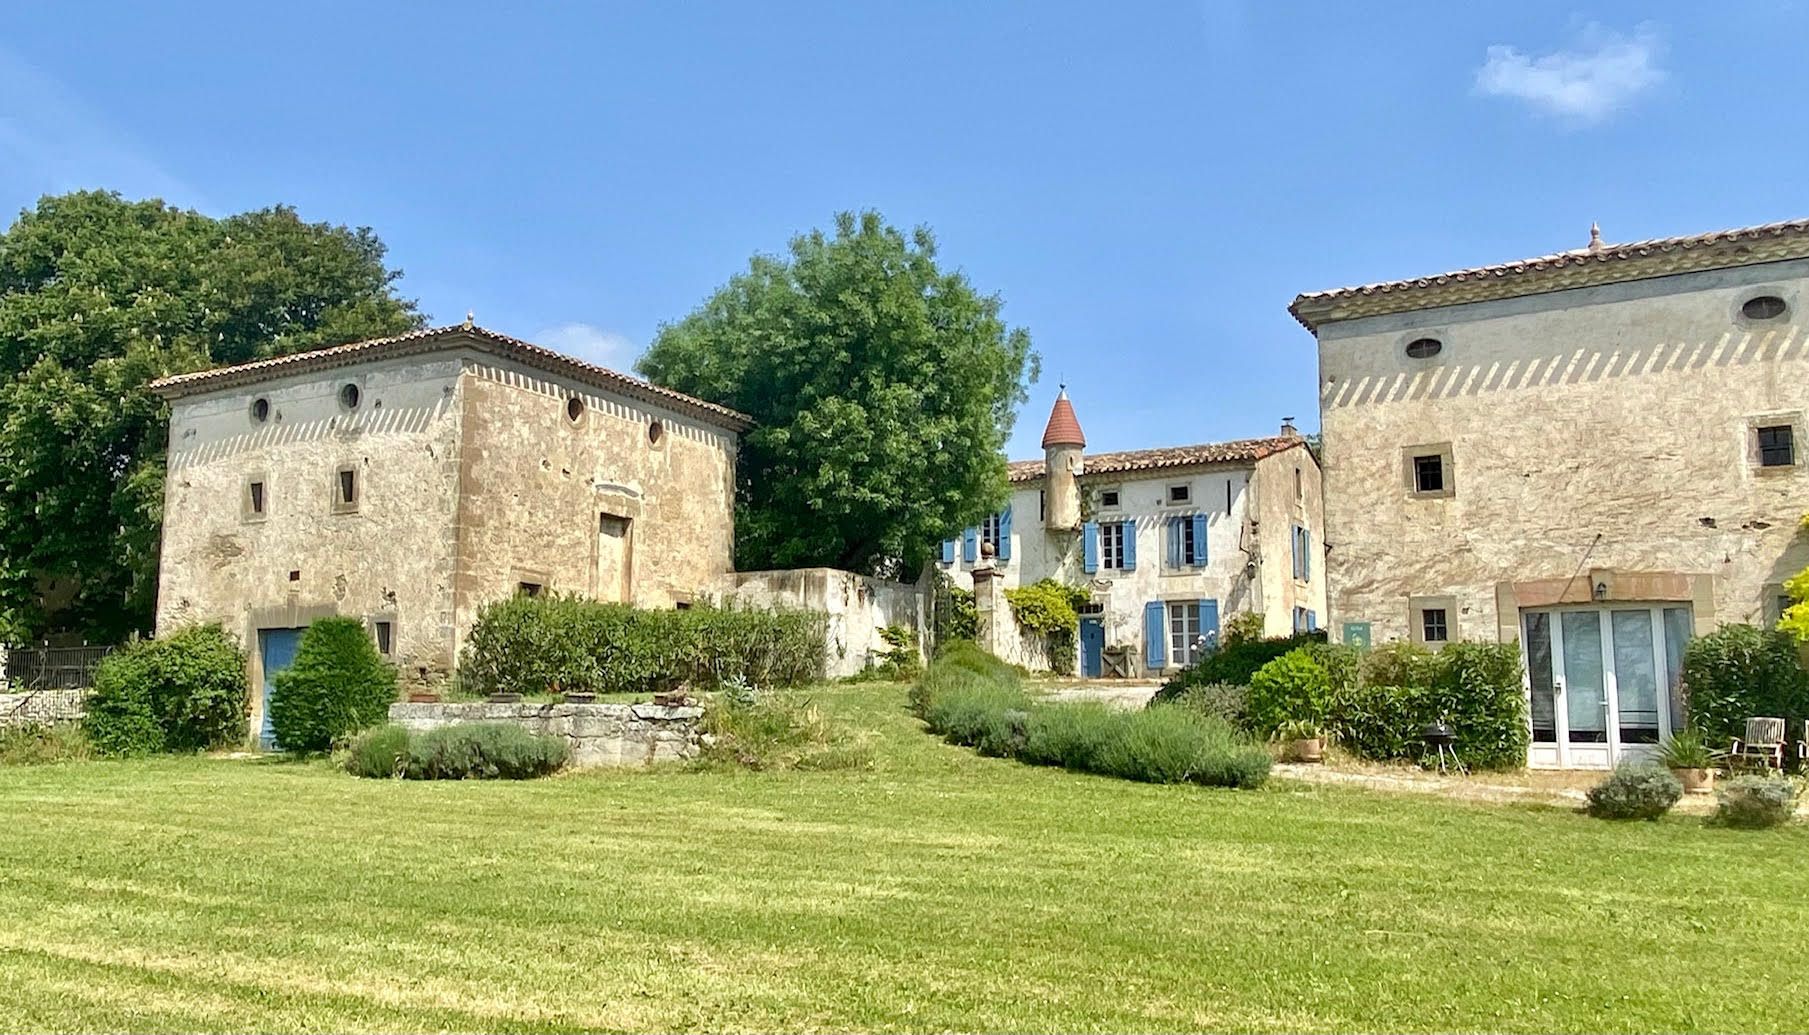 EN VENTE - Magifique château XVIIIè siècle 880 m² 